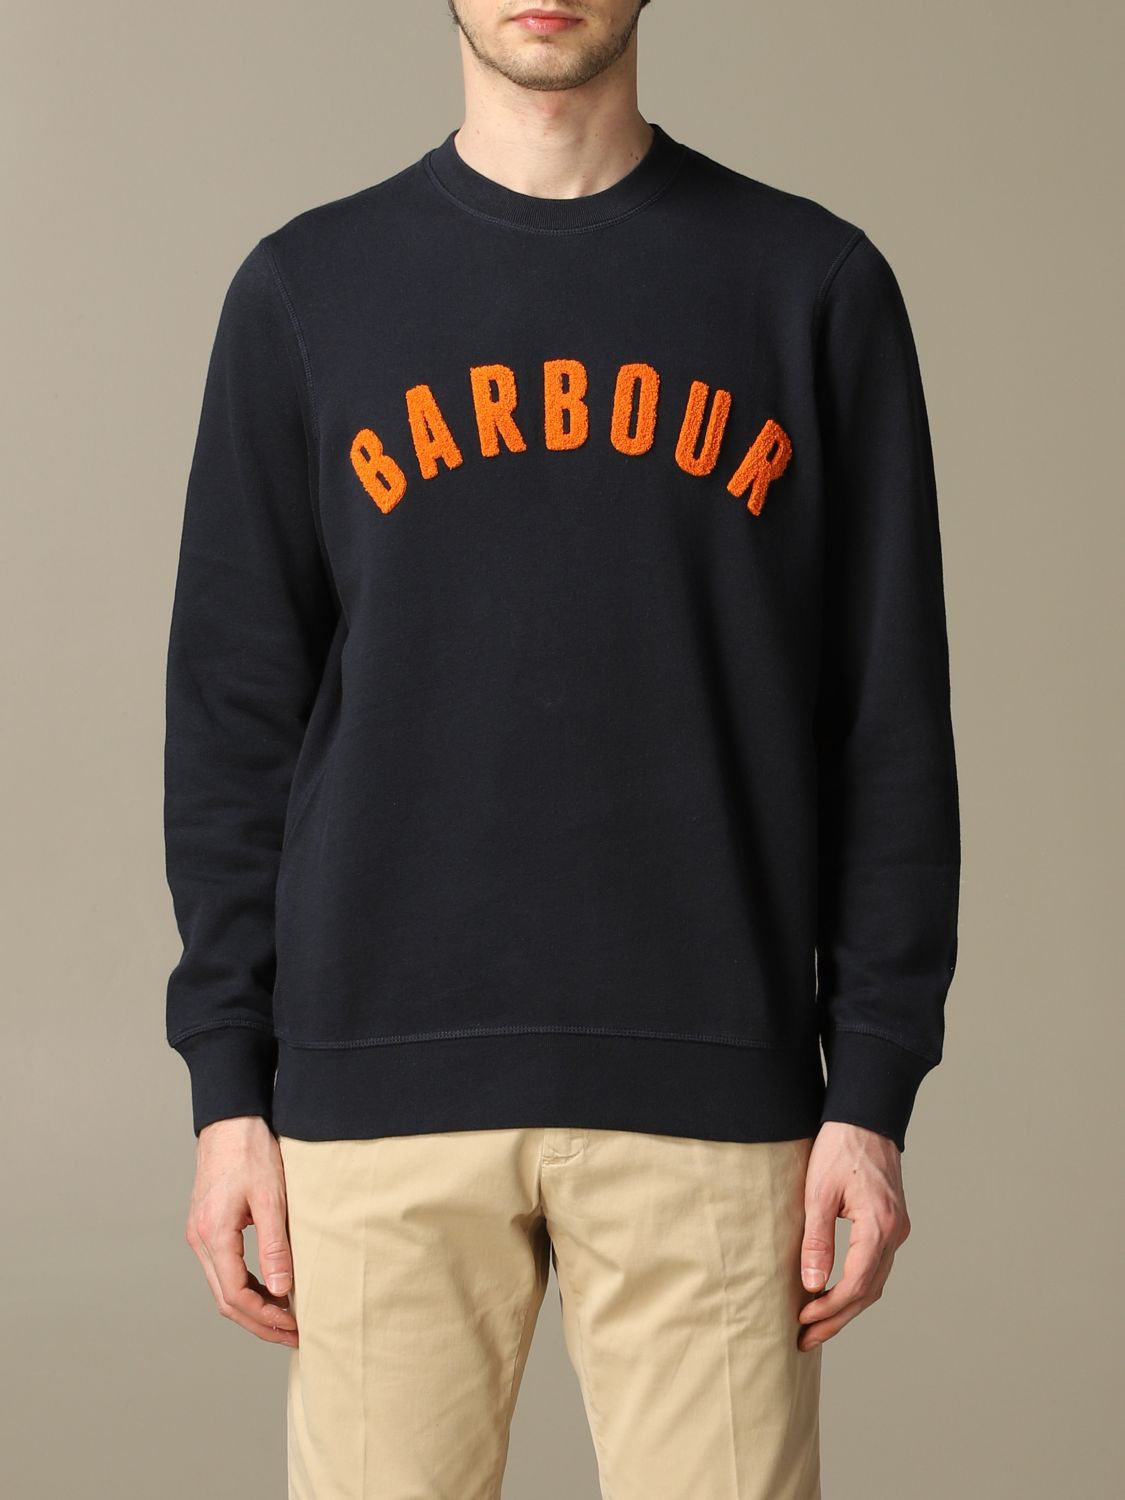 barbour sweatshirt mens